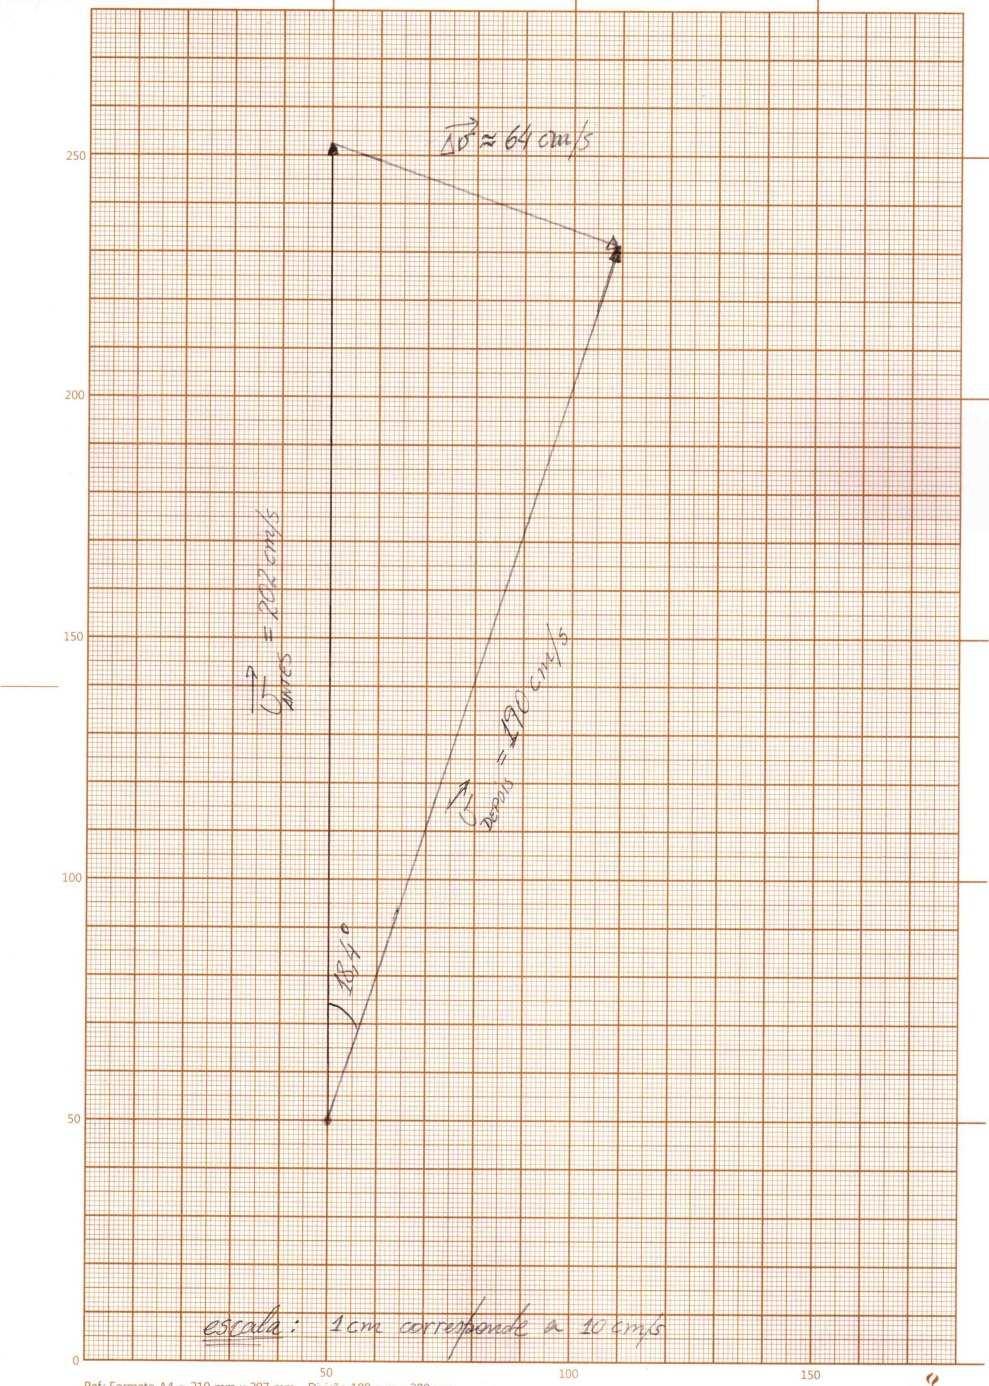 A LEI DA INÉRCIA Desenho em escala (1 cm : 10 cm/s) referente aos vetores velocidade do puck antes e depois da